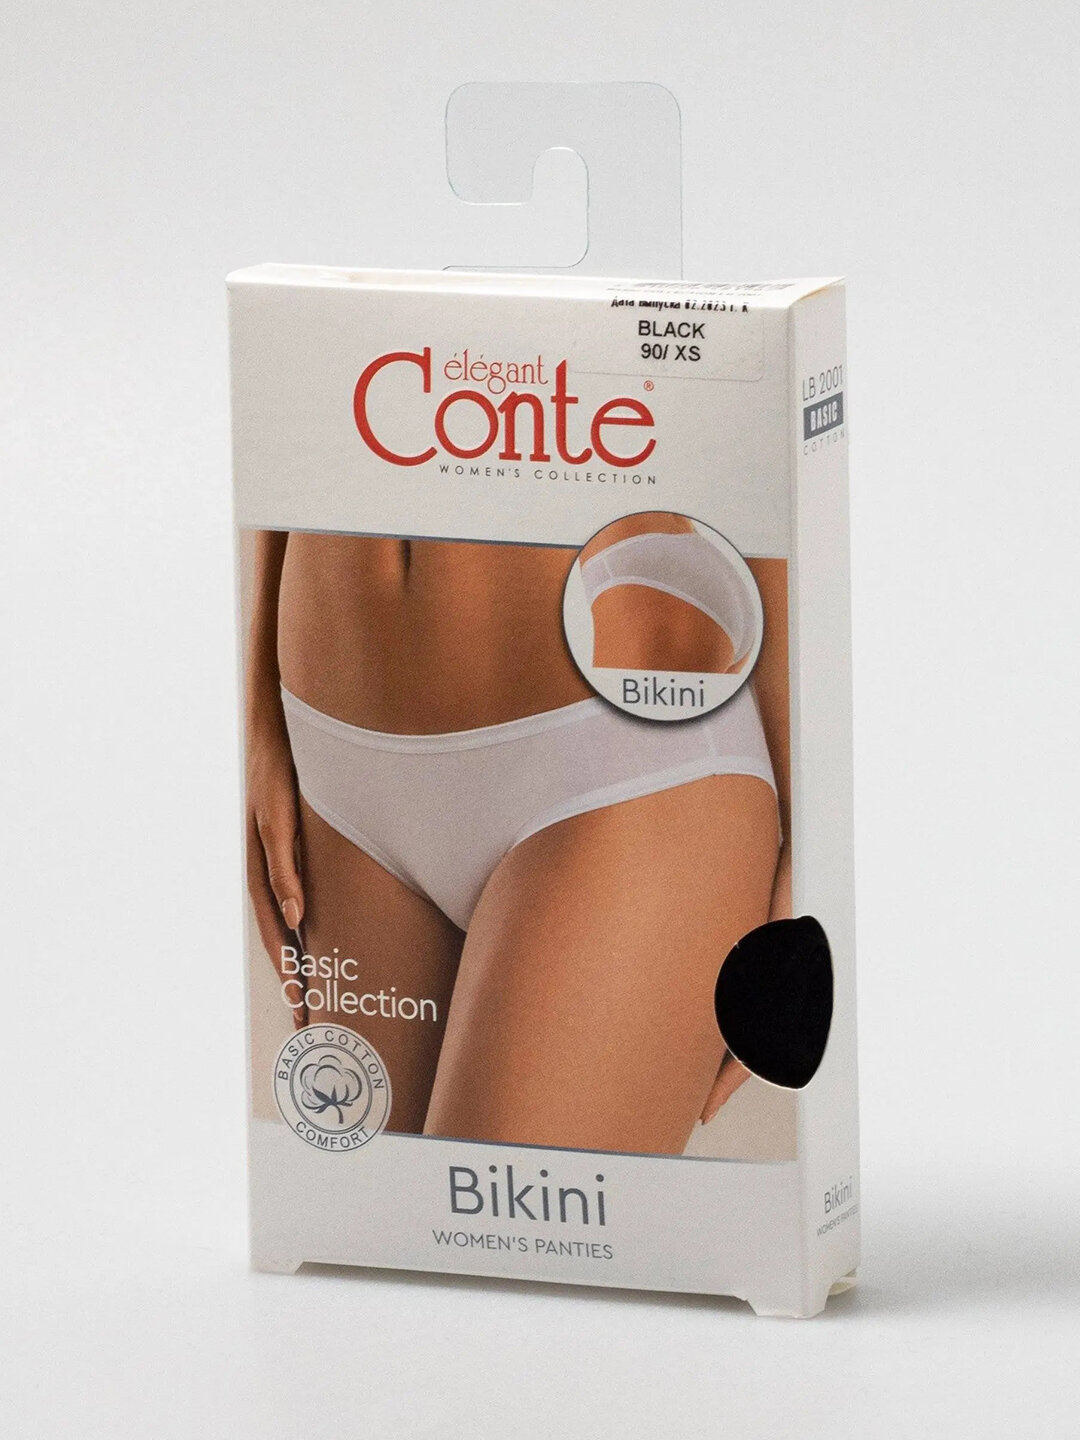 Трусы женские Conte Basic Cotton LB 2001 bikini размер 48=L цвет White=Белый обхват бёдер 102 см